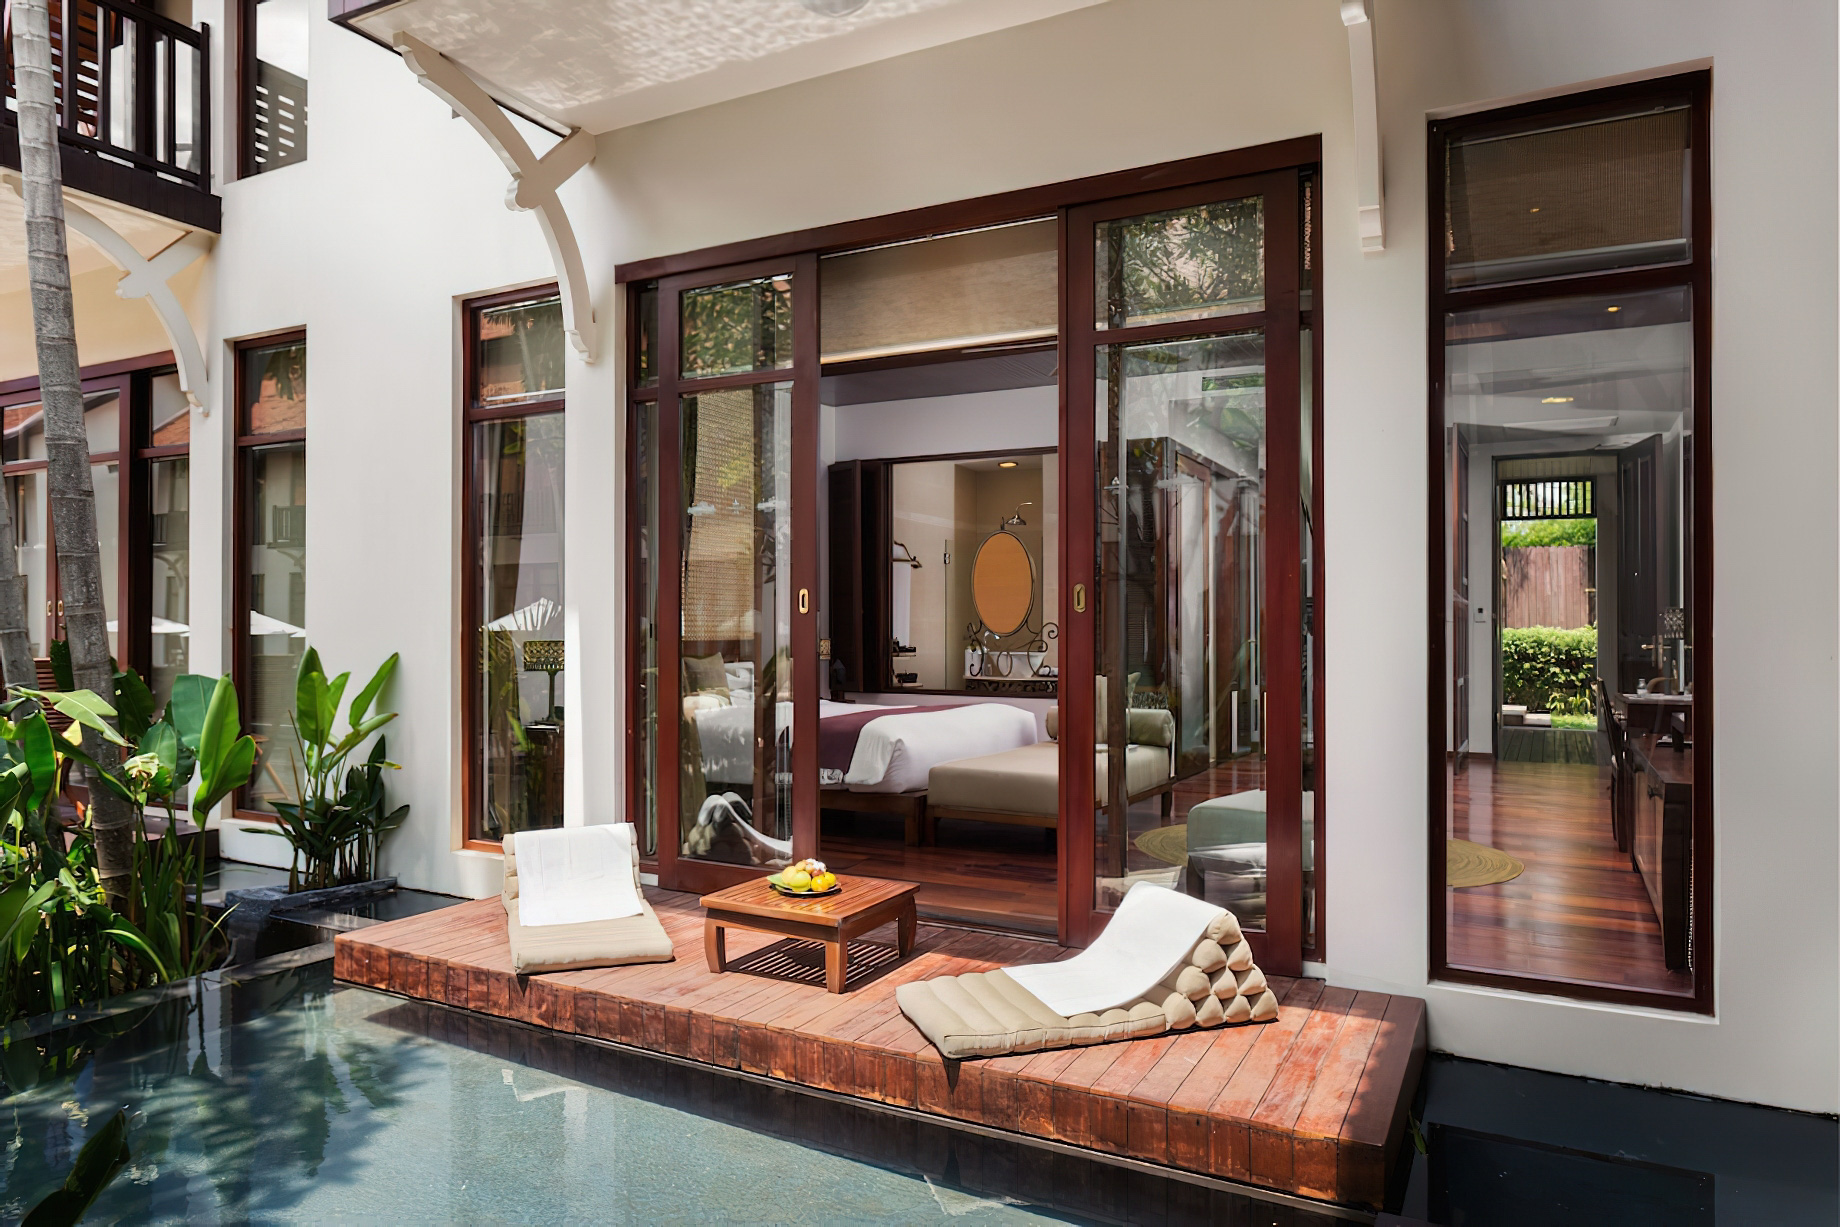 Anantara Angkor Resort – Siem Reap, Cambodia – Guest Suite Deck